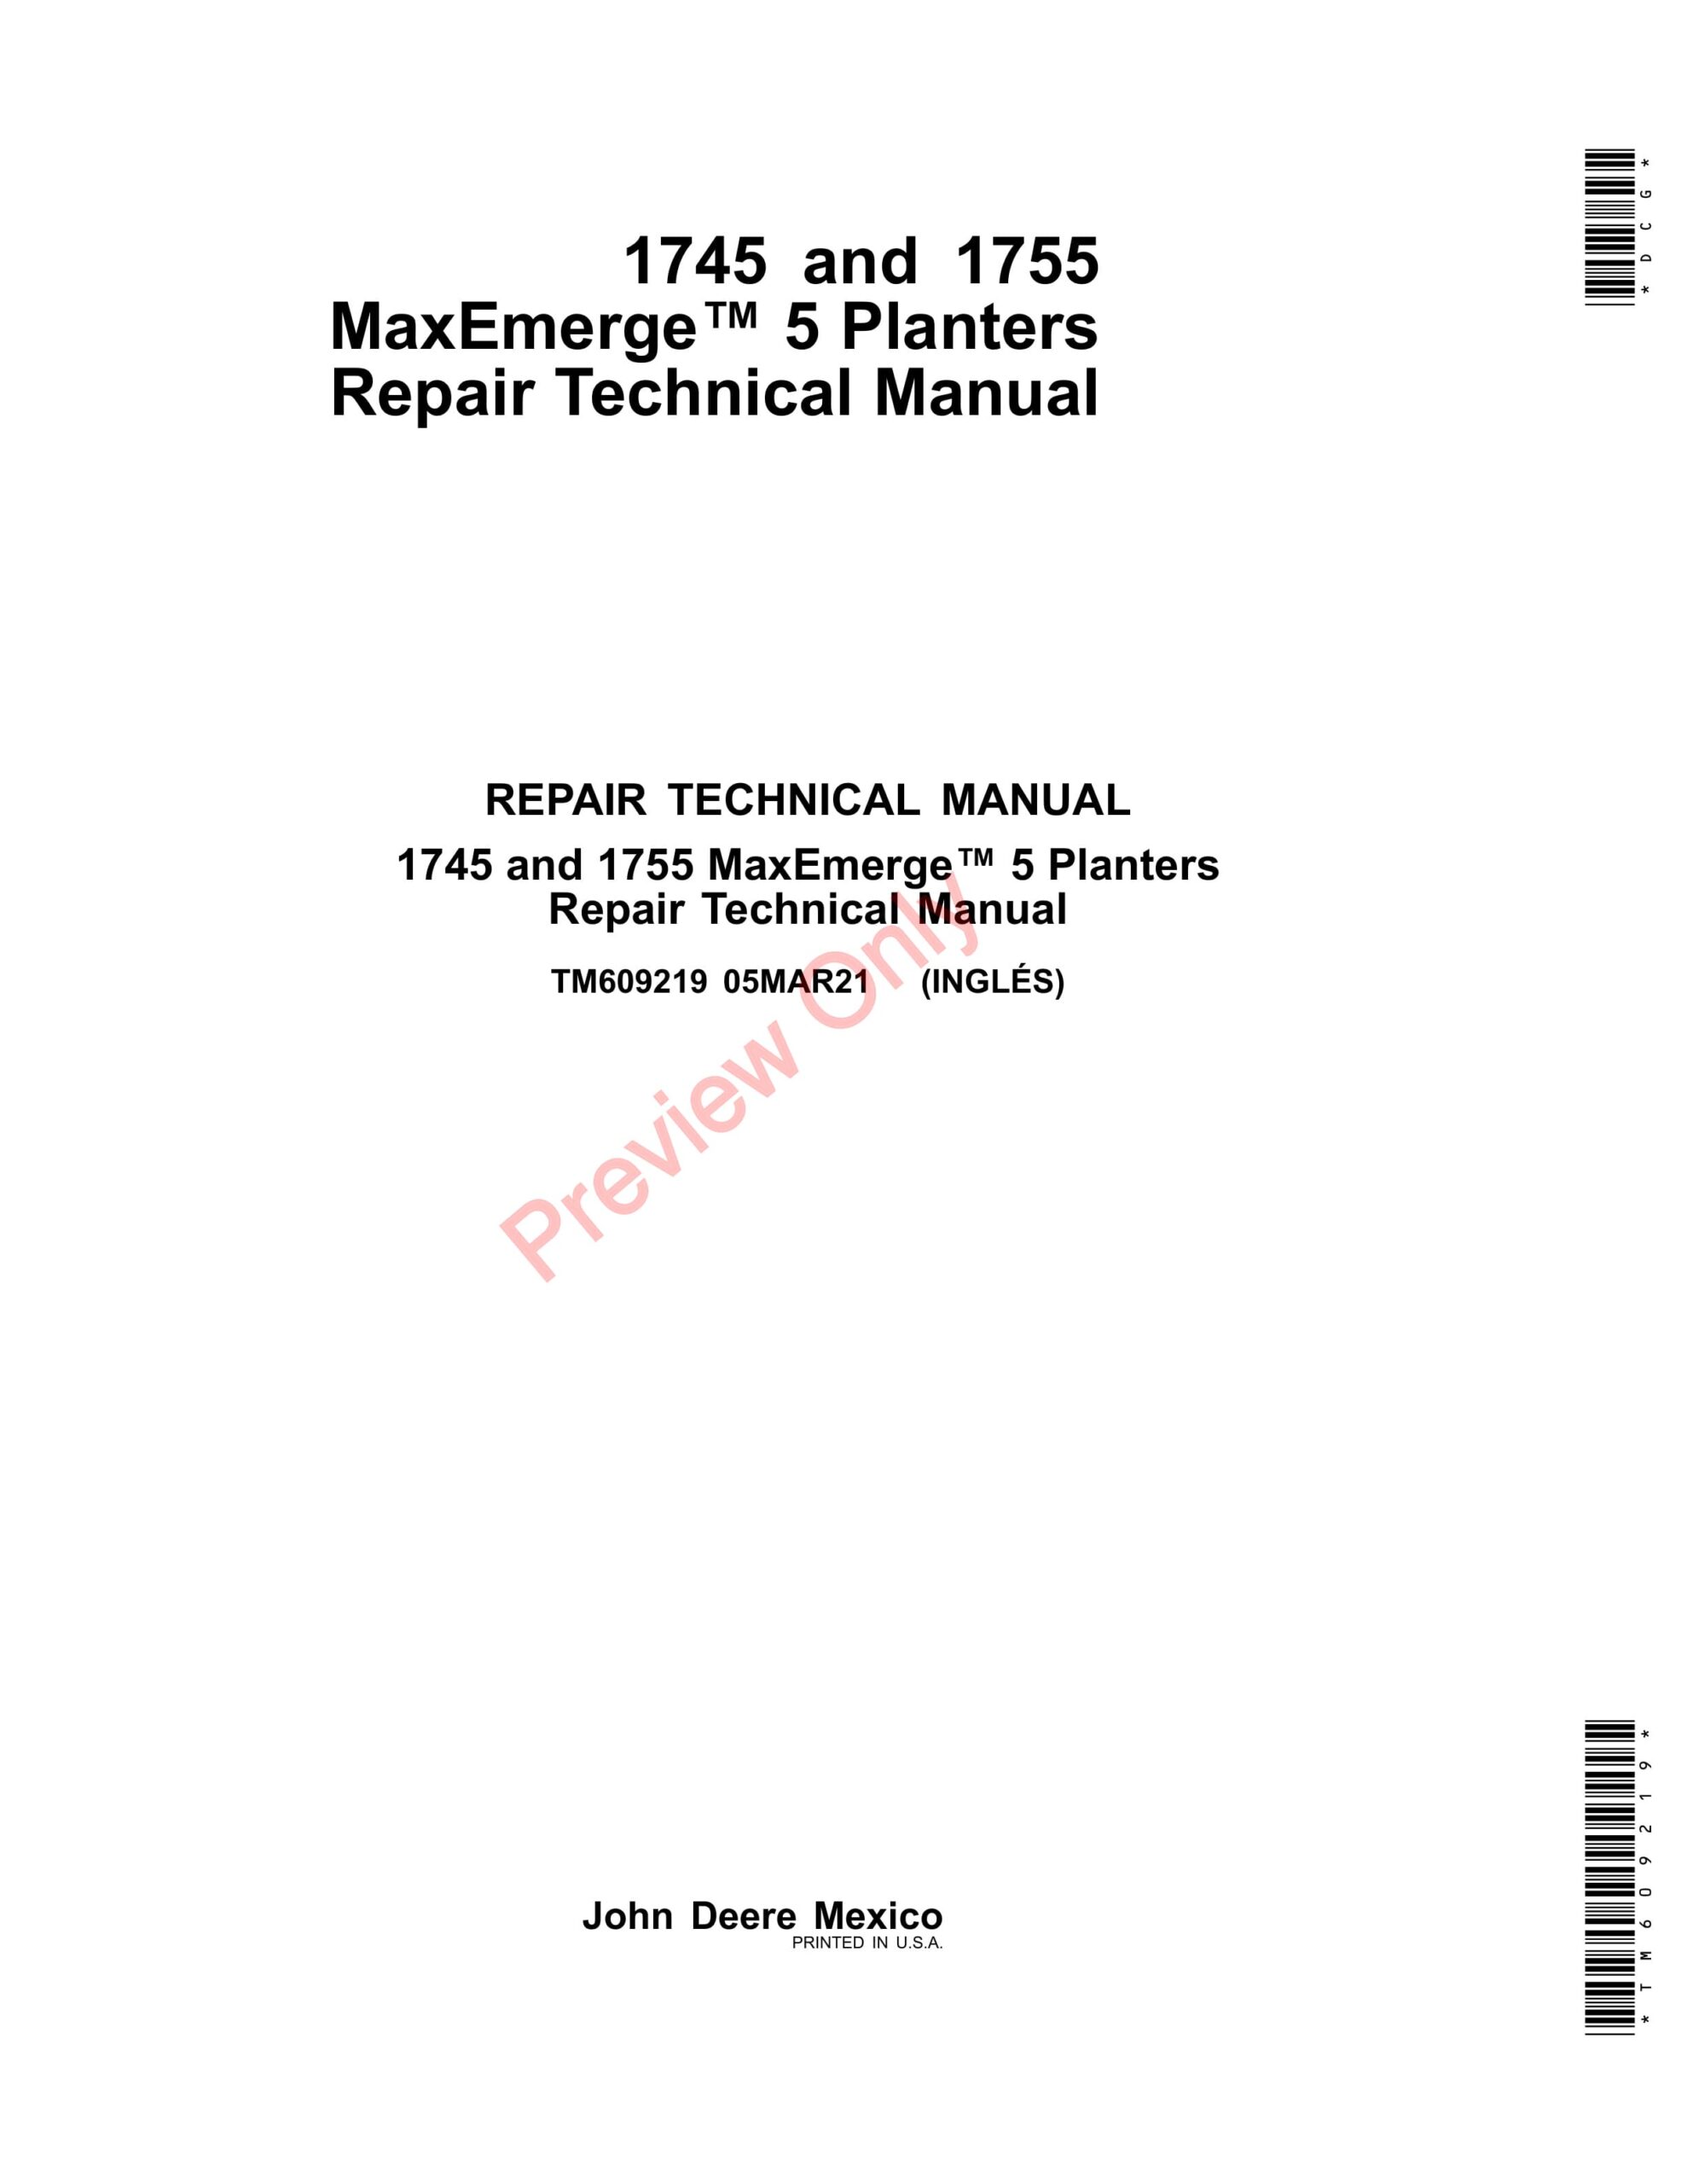 John Deere 1745 and 1755 MaxEmerge 5 Planters Repair Technical Manual TM609219 05MAR21-1